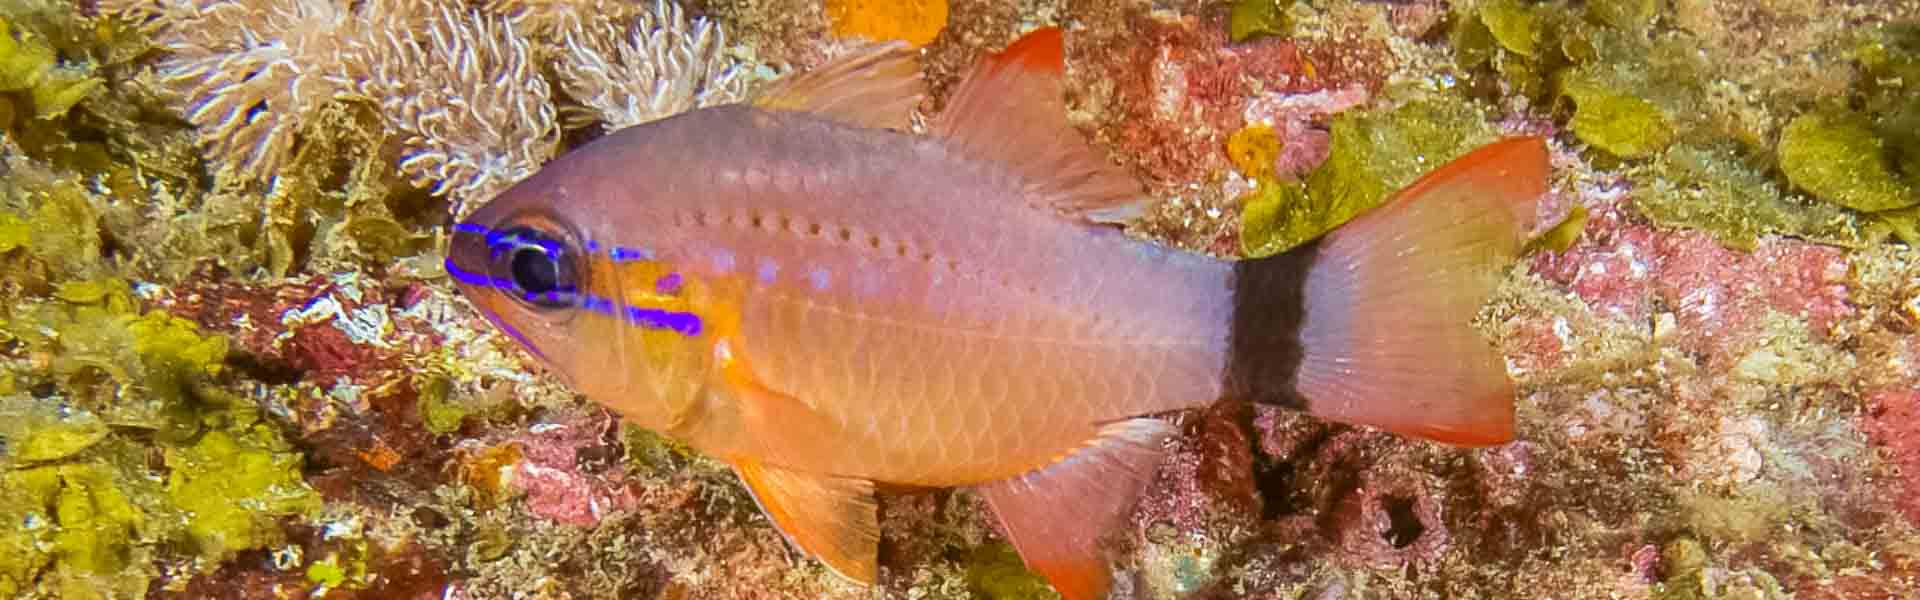 The Flower Cardinalfish